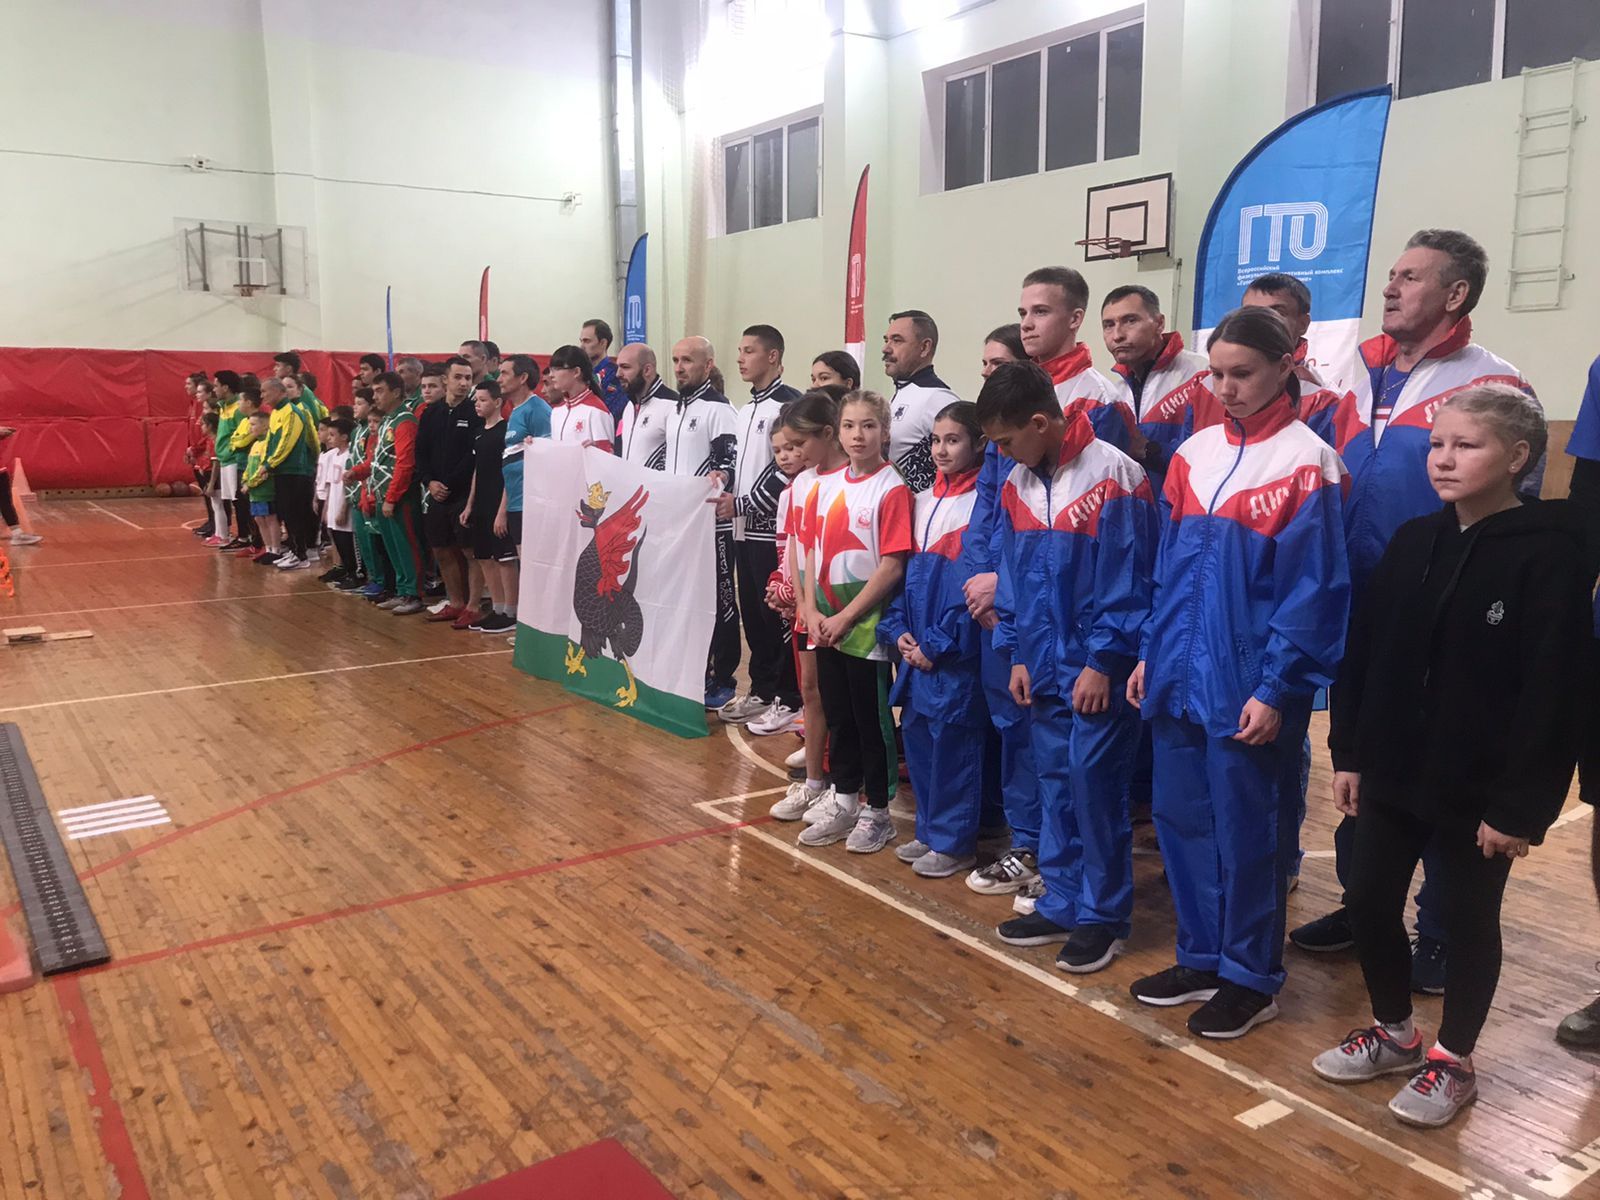 Команда Нурлатского района  успешно выступила в Суперфинале фестиваля ГТО